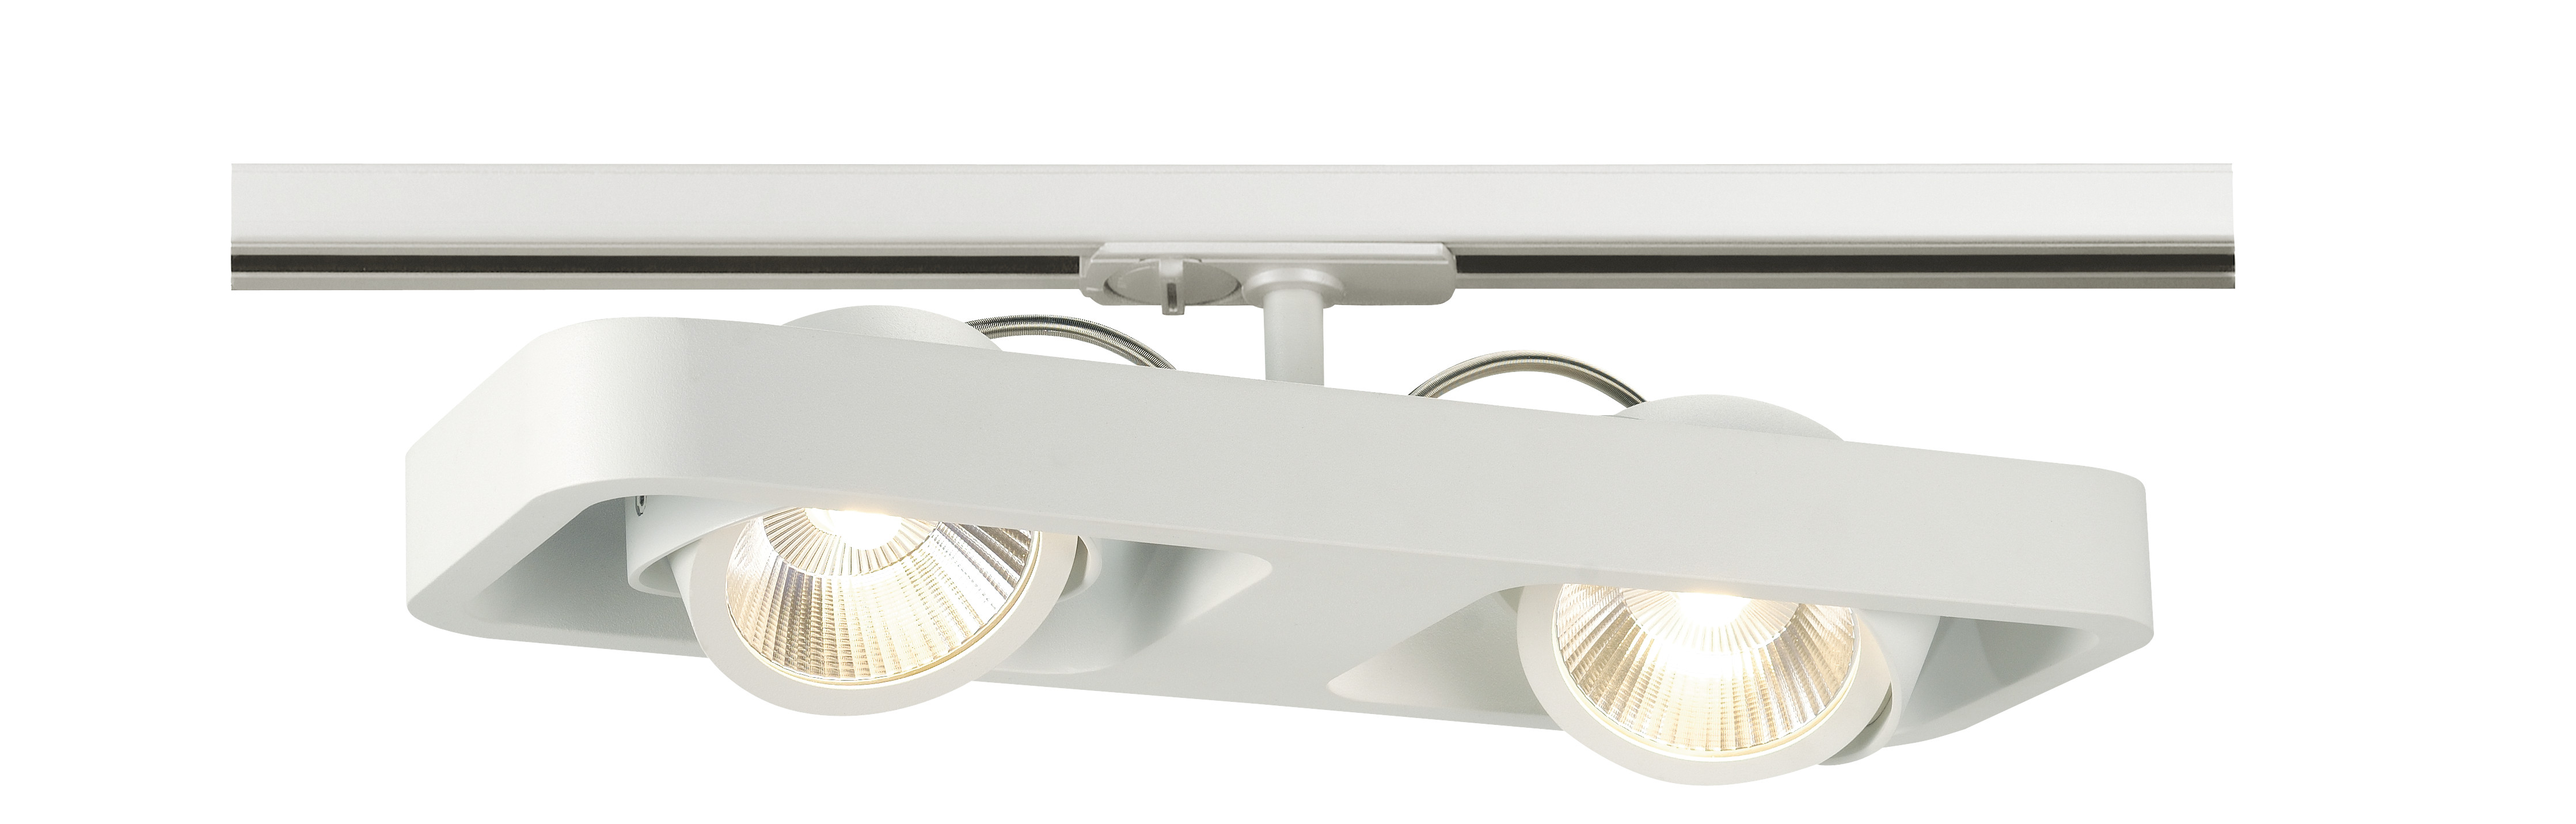 LYNAH LED alb,24° 3000Kdublu proiector,incl. adaptor